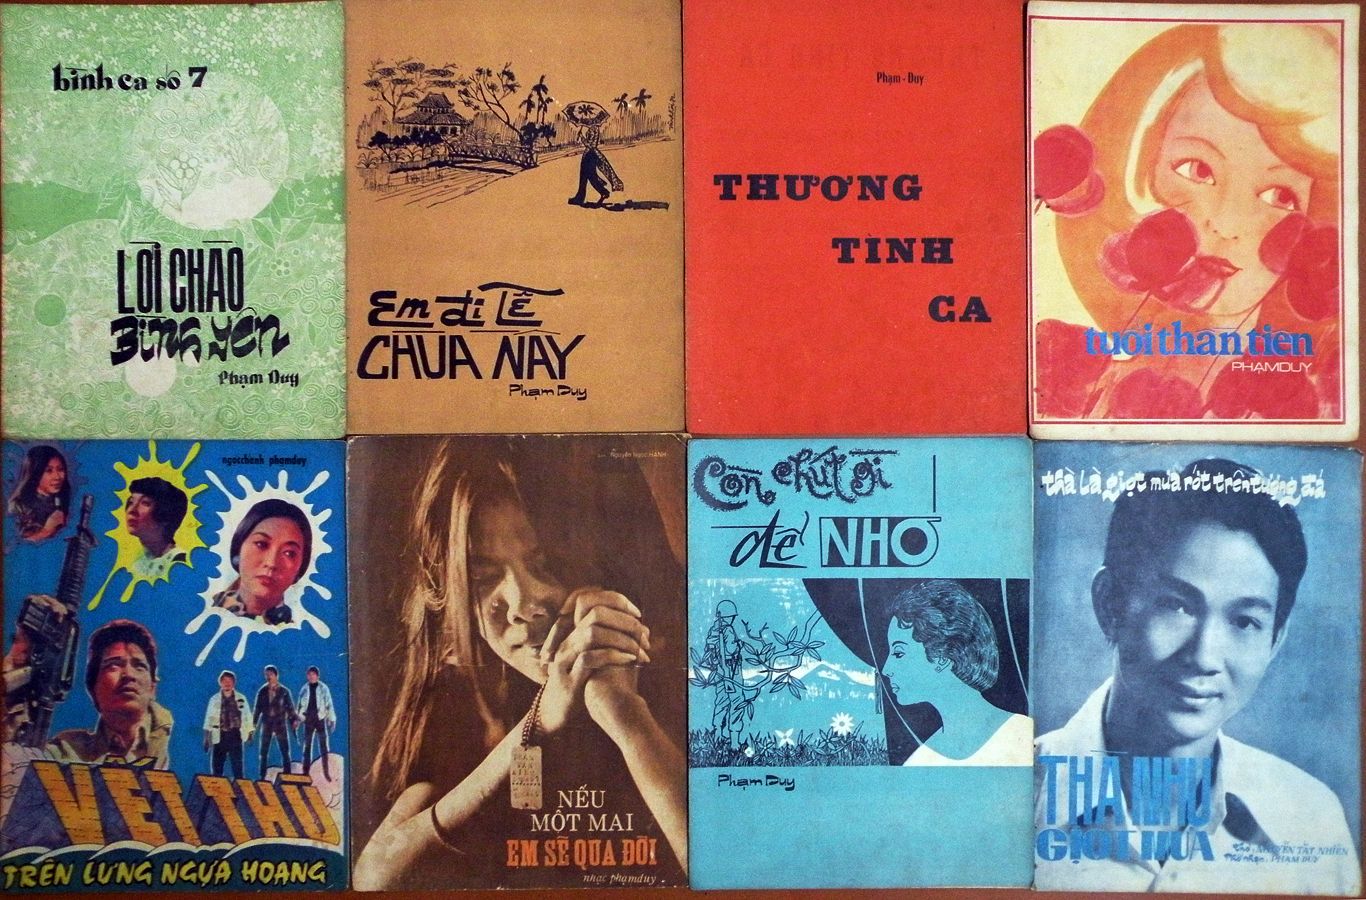 Ảnh] Lưu giữ một thời vàng son: Ảnh bìa album Nhạc Vàng trước 1975 -  Urbanist Vietnam